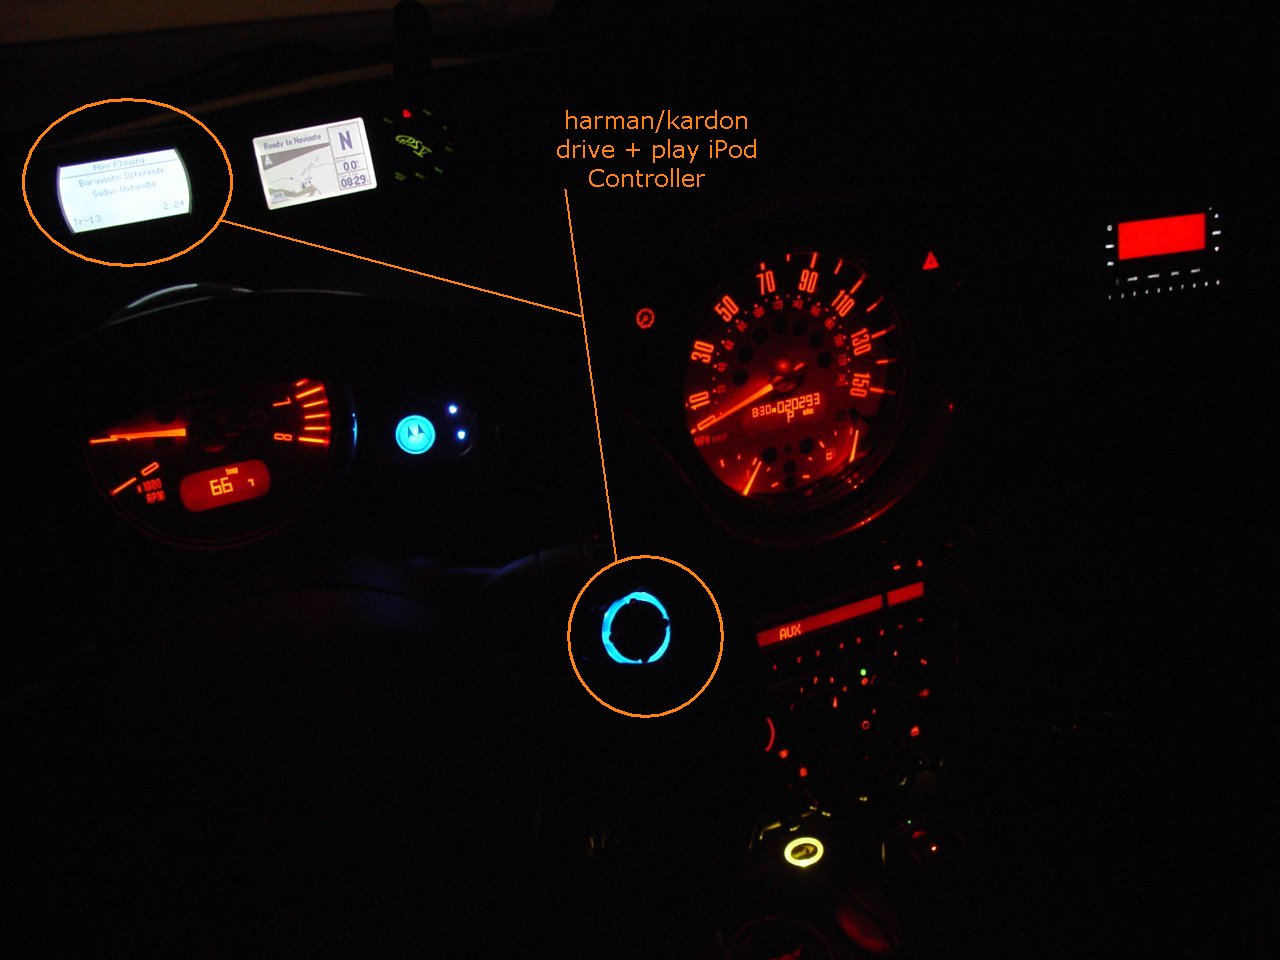 MINI Cooper - harman/kardon drive + play iPod Controller